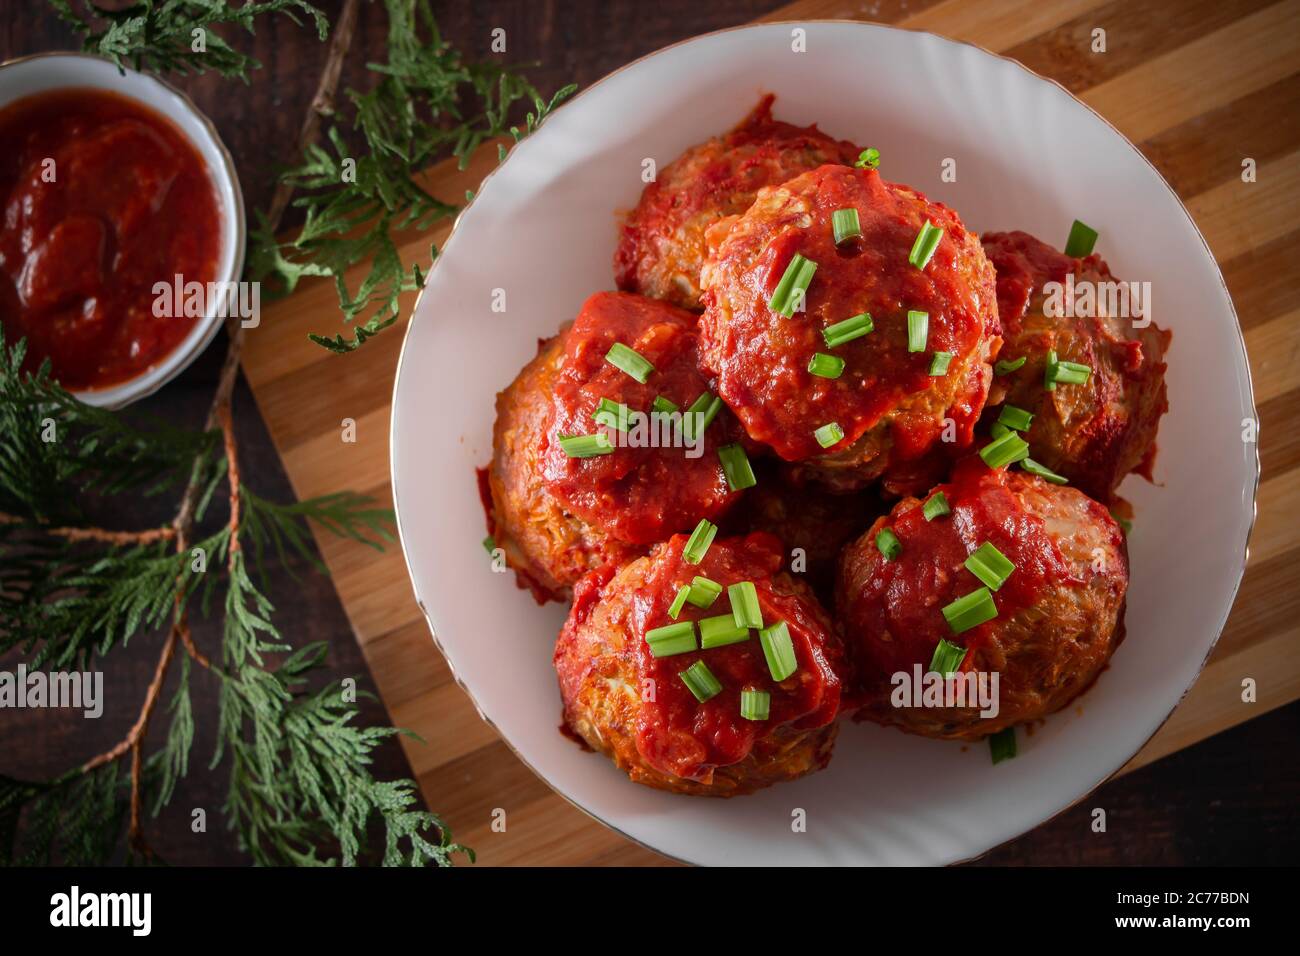 Fleischbällchen mit Tomatensauce und Kräutern. Draufsicht auf einem Teller mit Fleischbällchen und Sauce Stockfoto